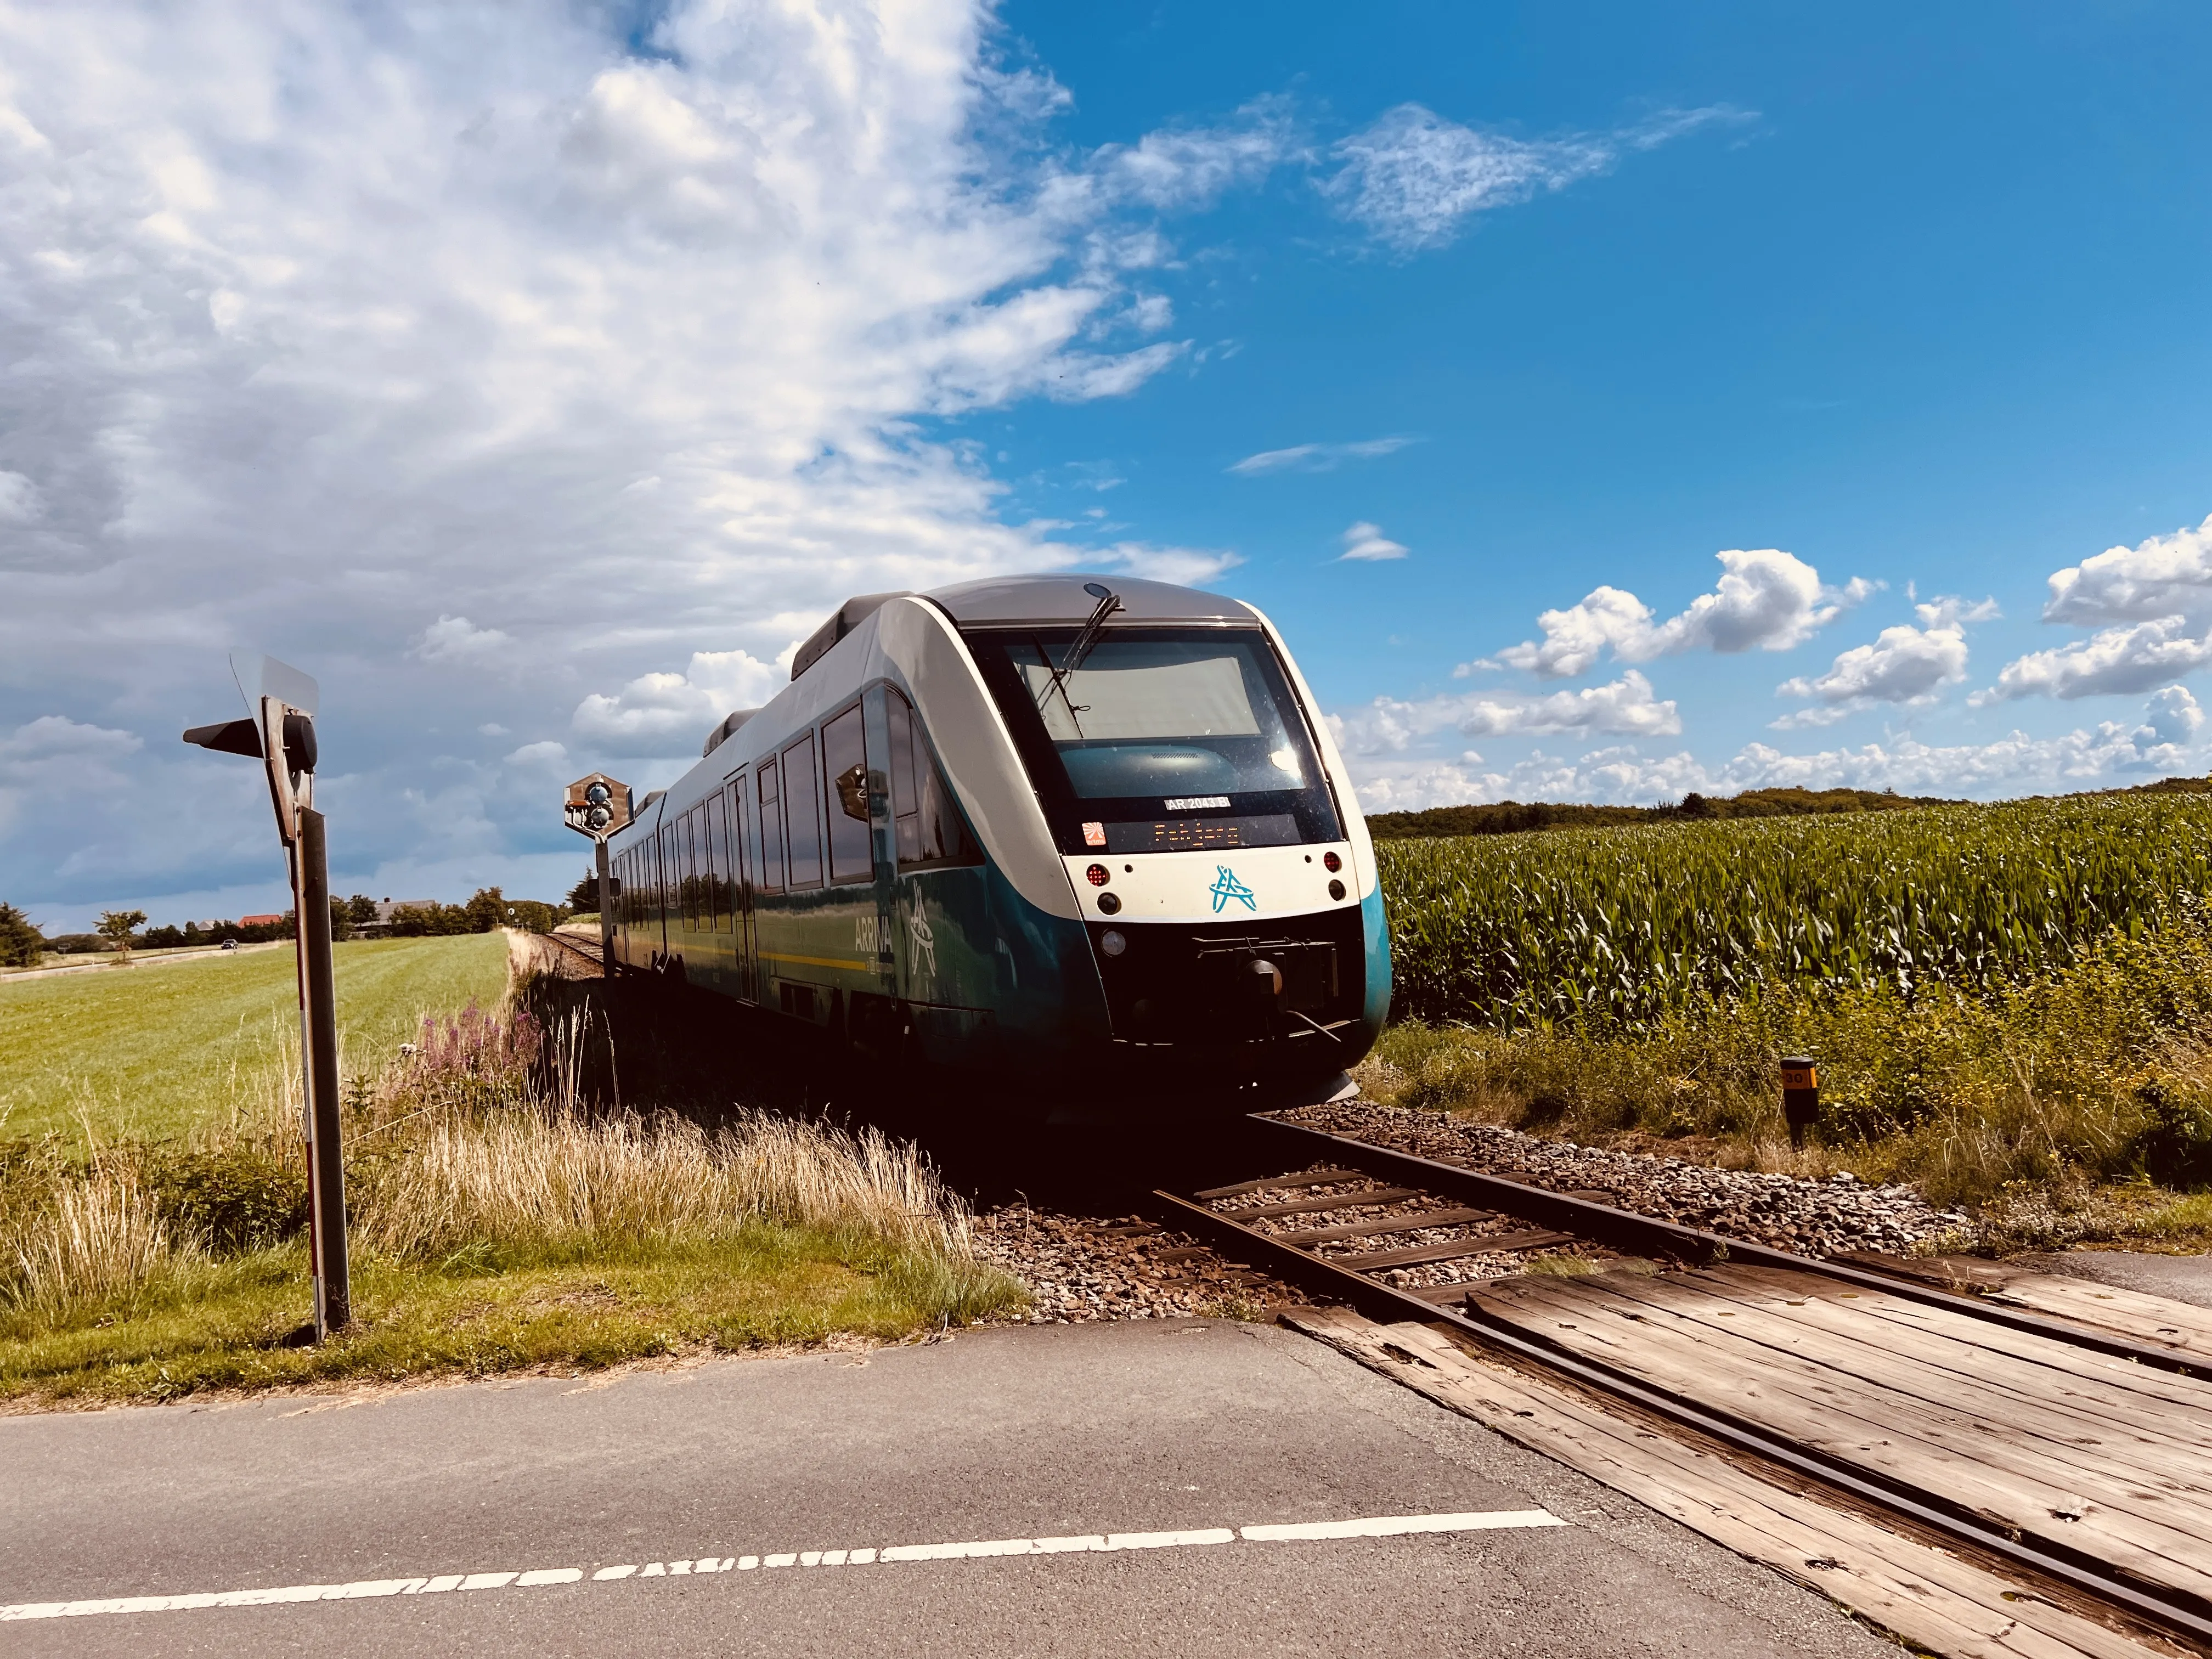 Billede af tog ud for Hyllerslev Trinbræt.